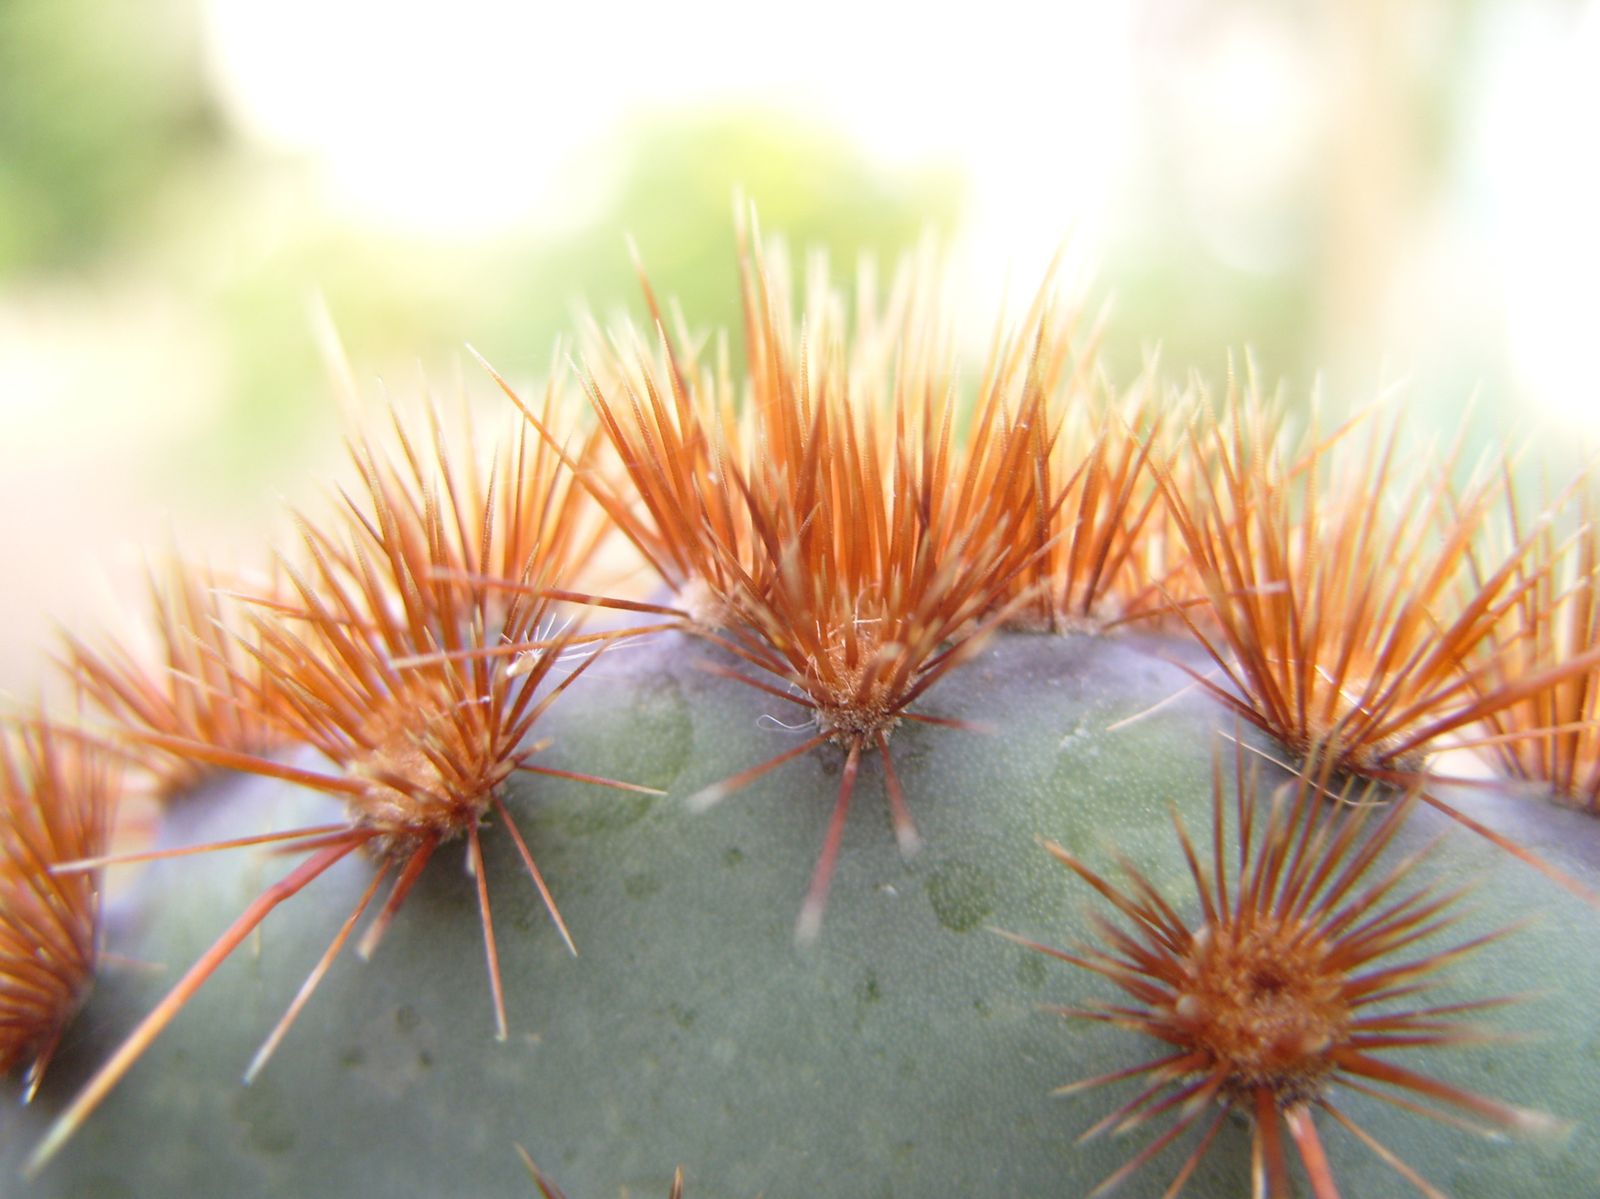 Spination et détail des épines de mes cactus.